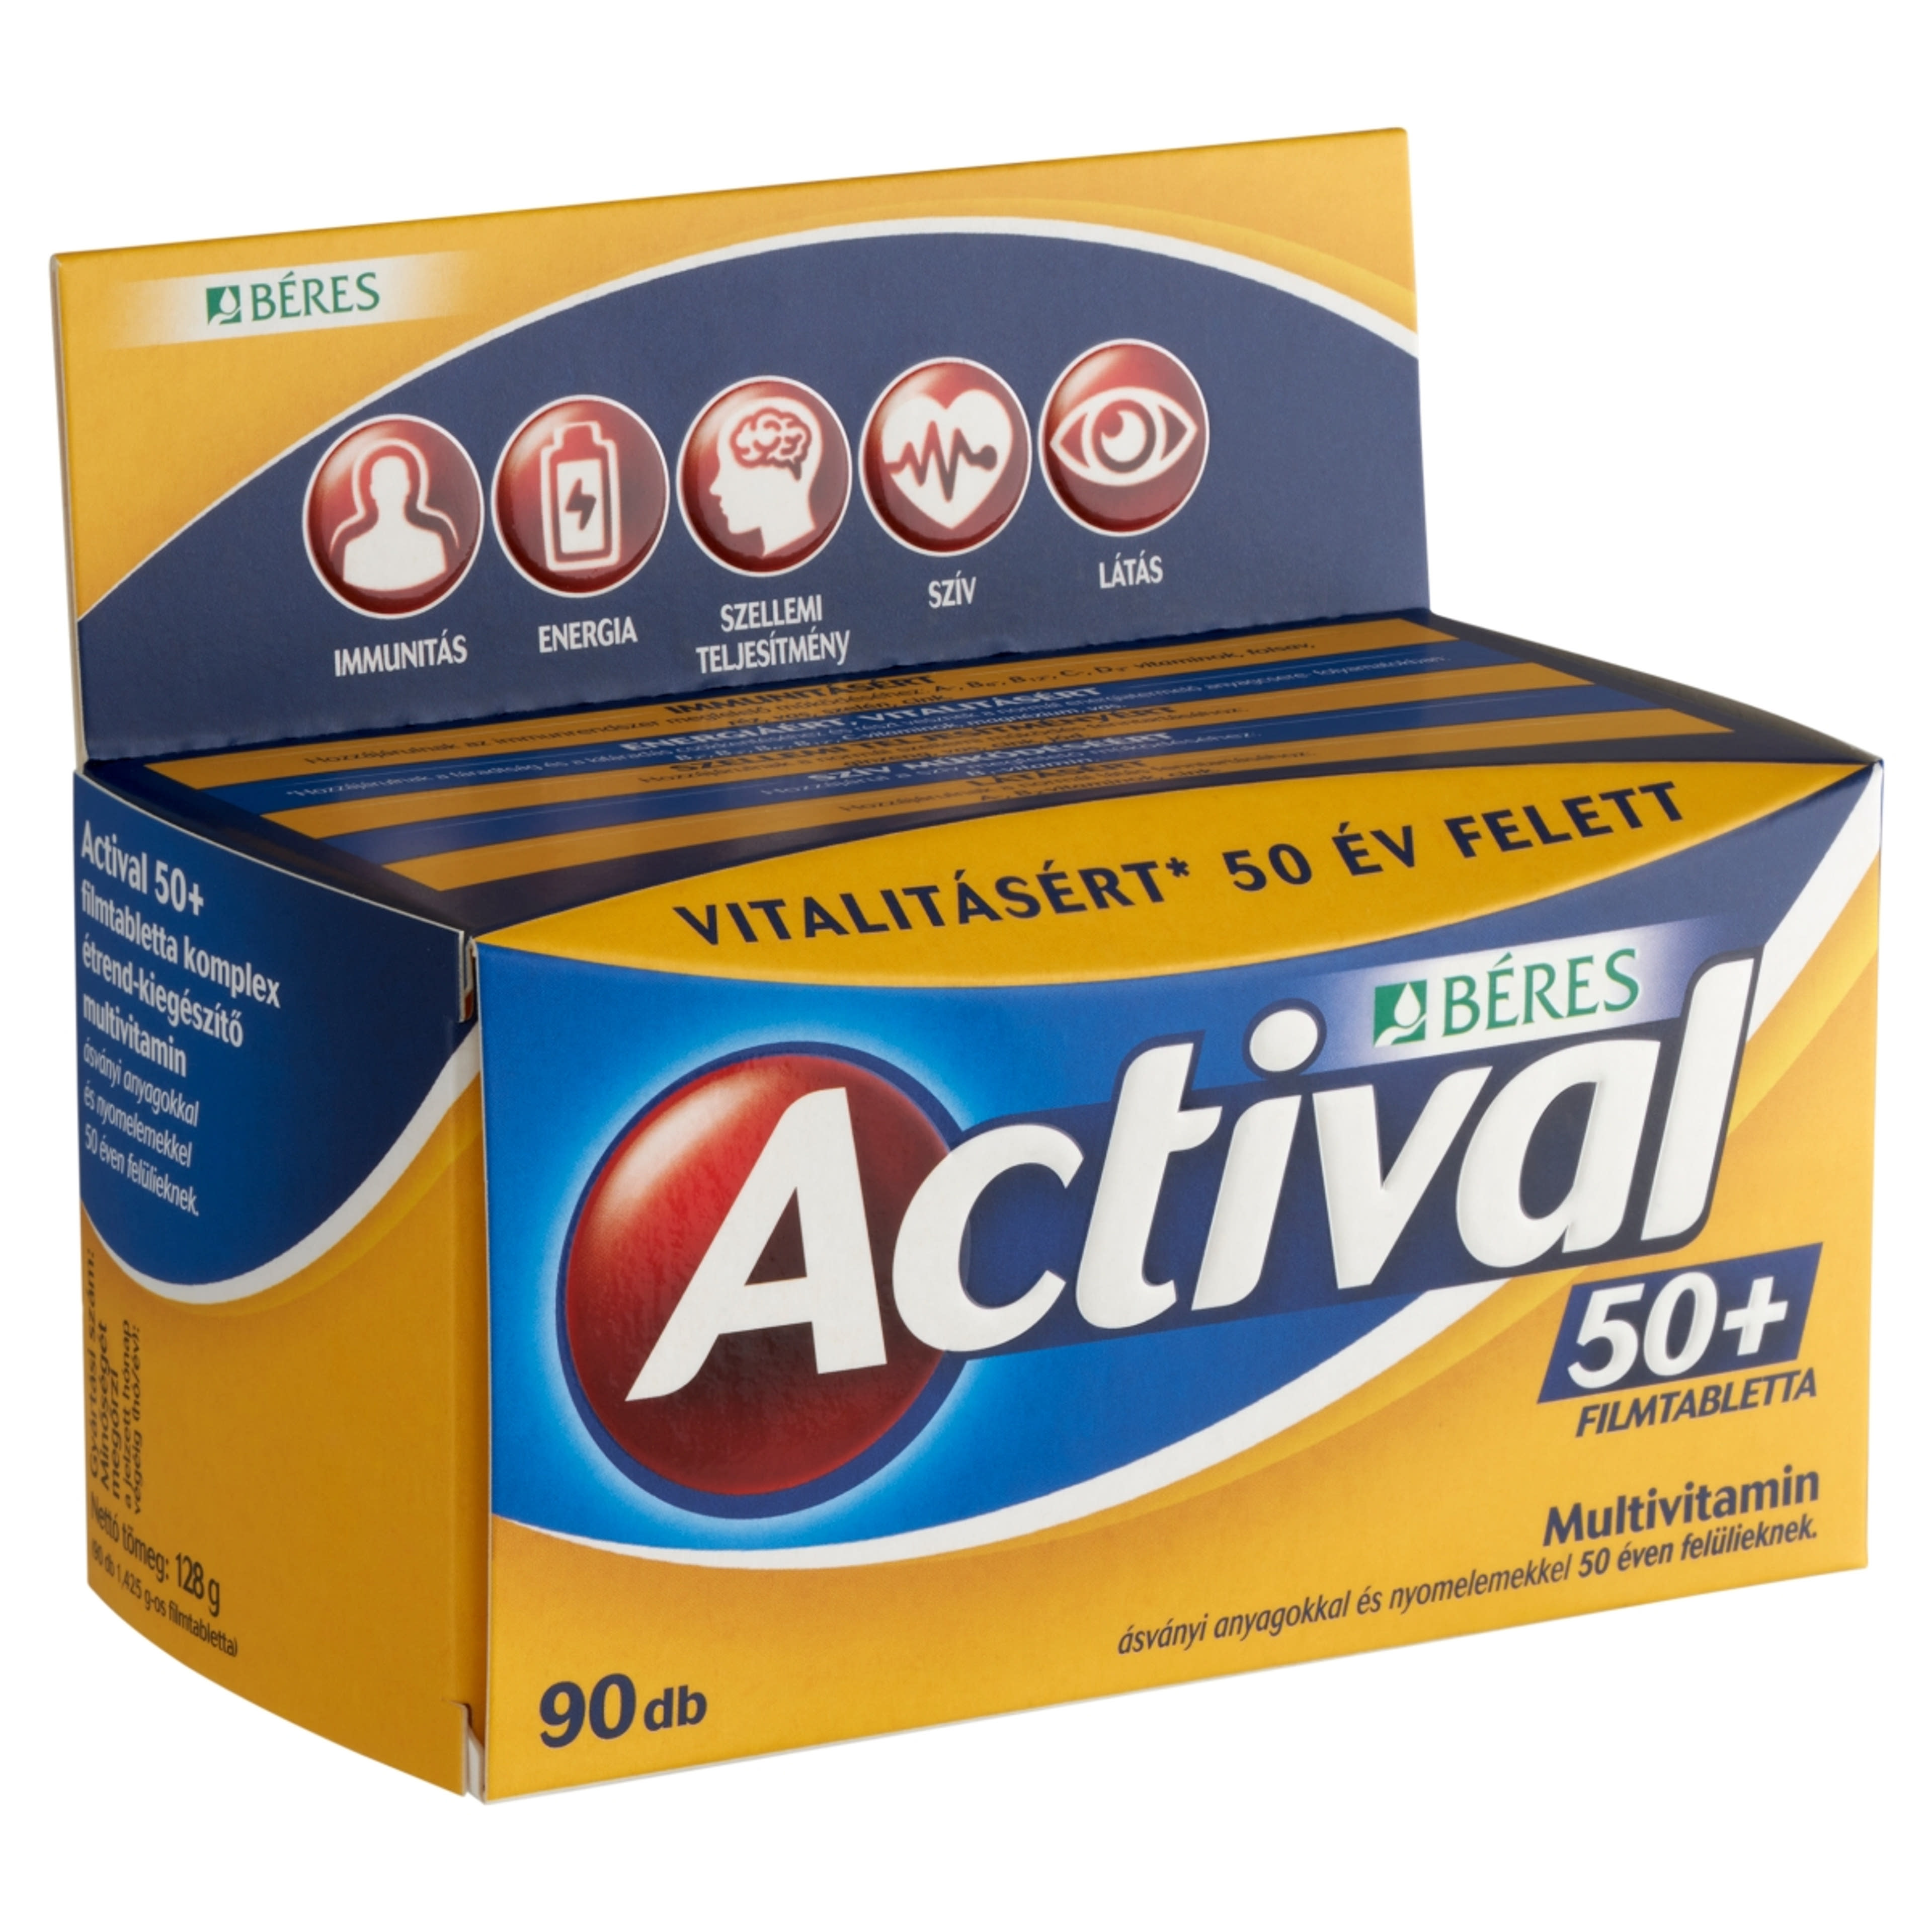 Actival 50+ filmtabletta - 90 db-4